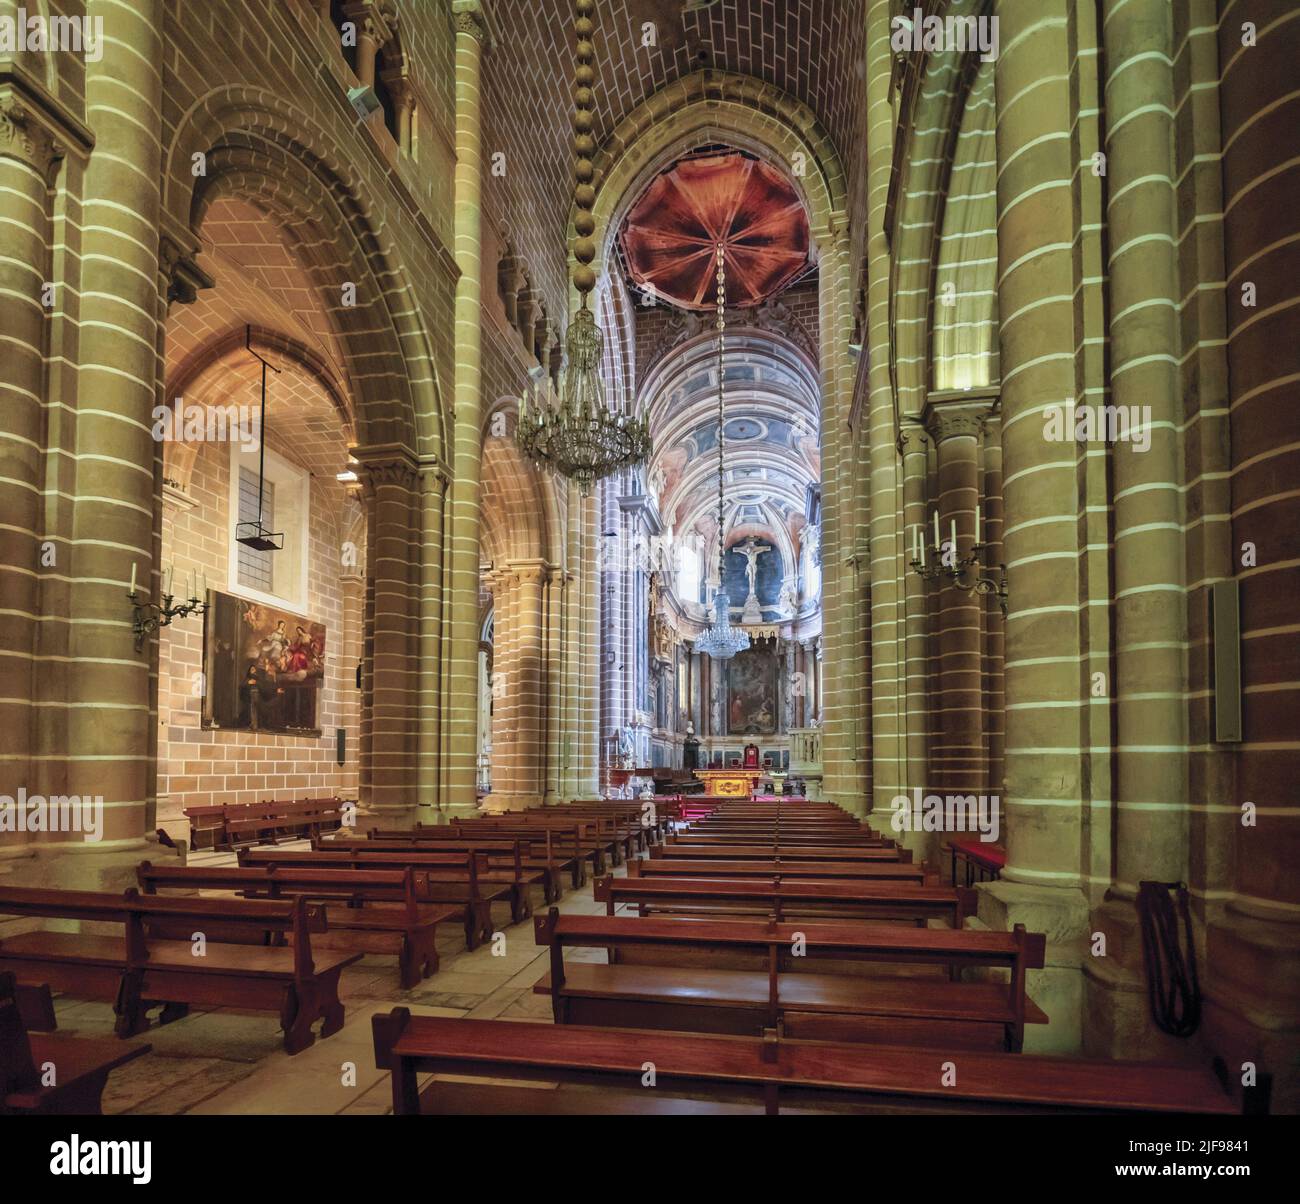 Nave central de la catedral de Évora, construida entre los siglos 12th y 18th en estilo arquitectónico románico, gótico, manuelino y barroco. Évora, Foto de stock